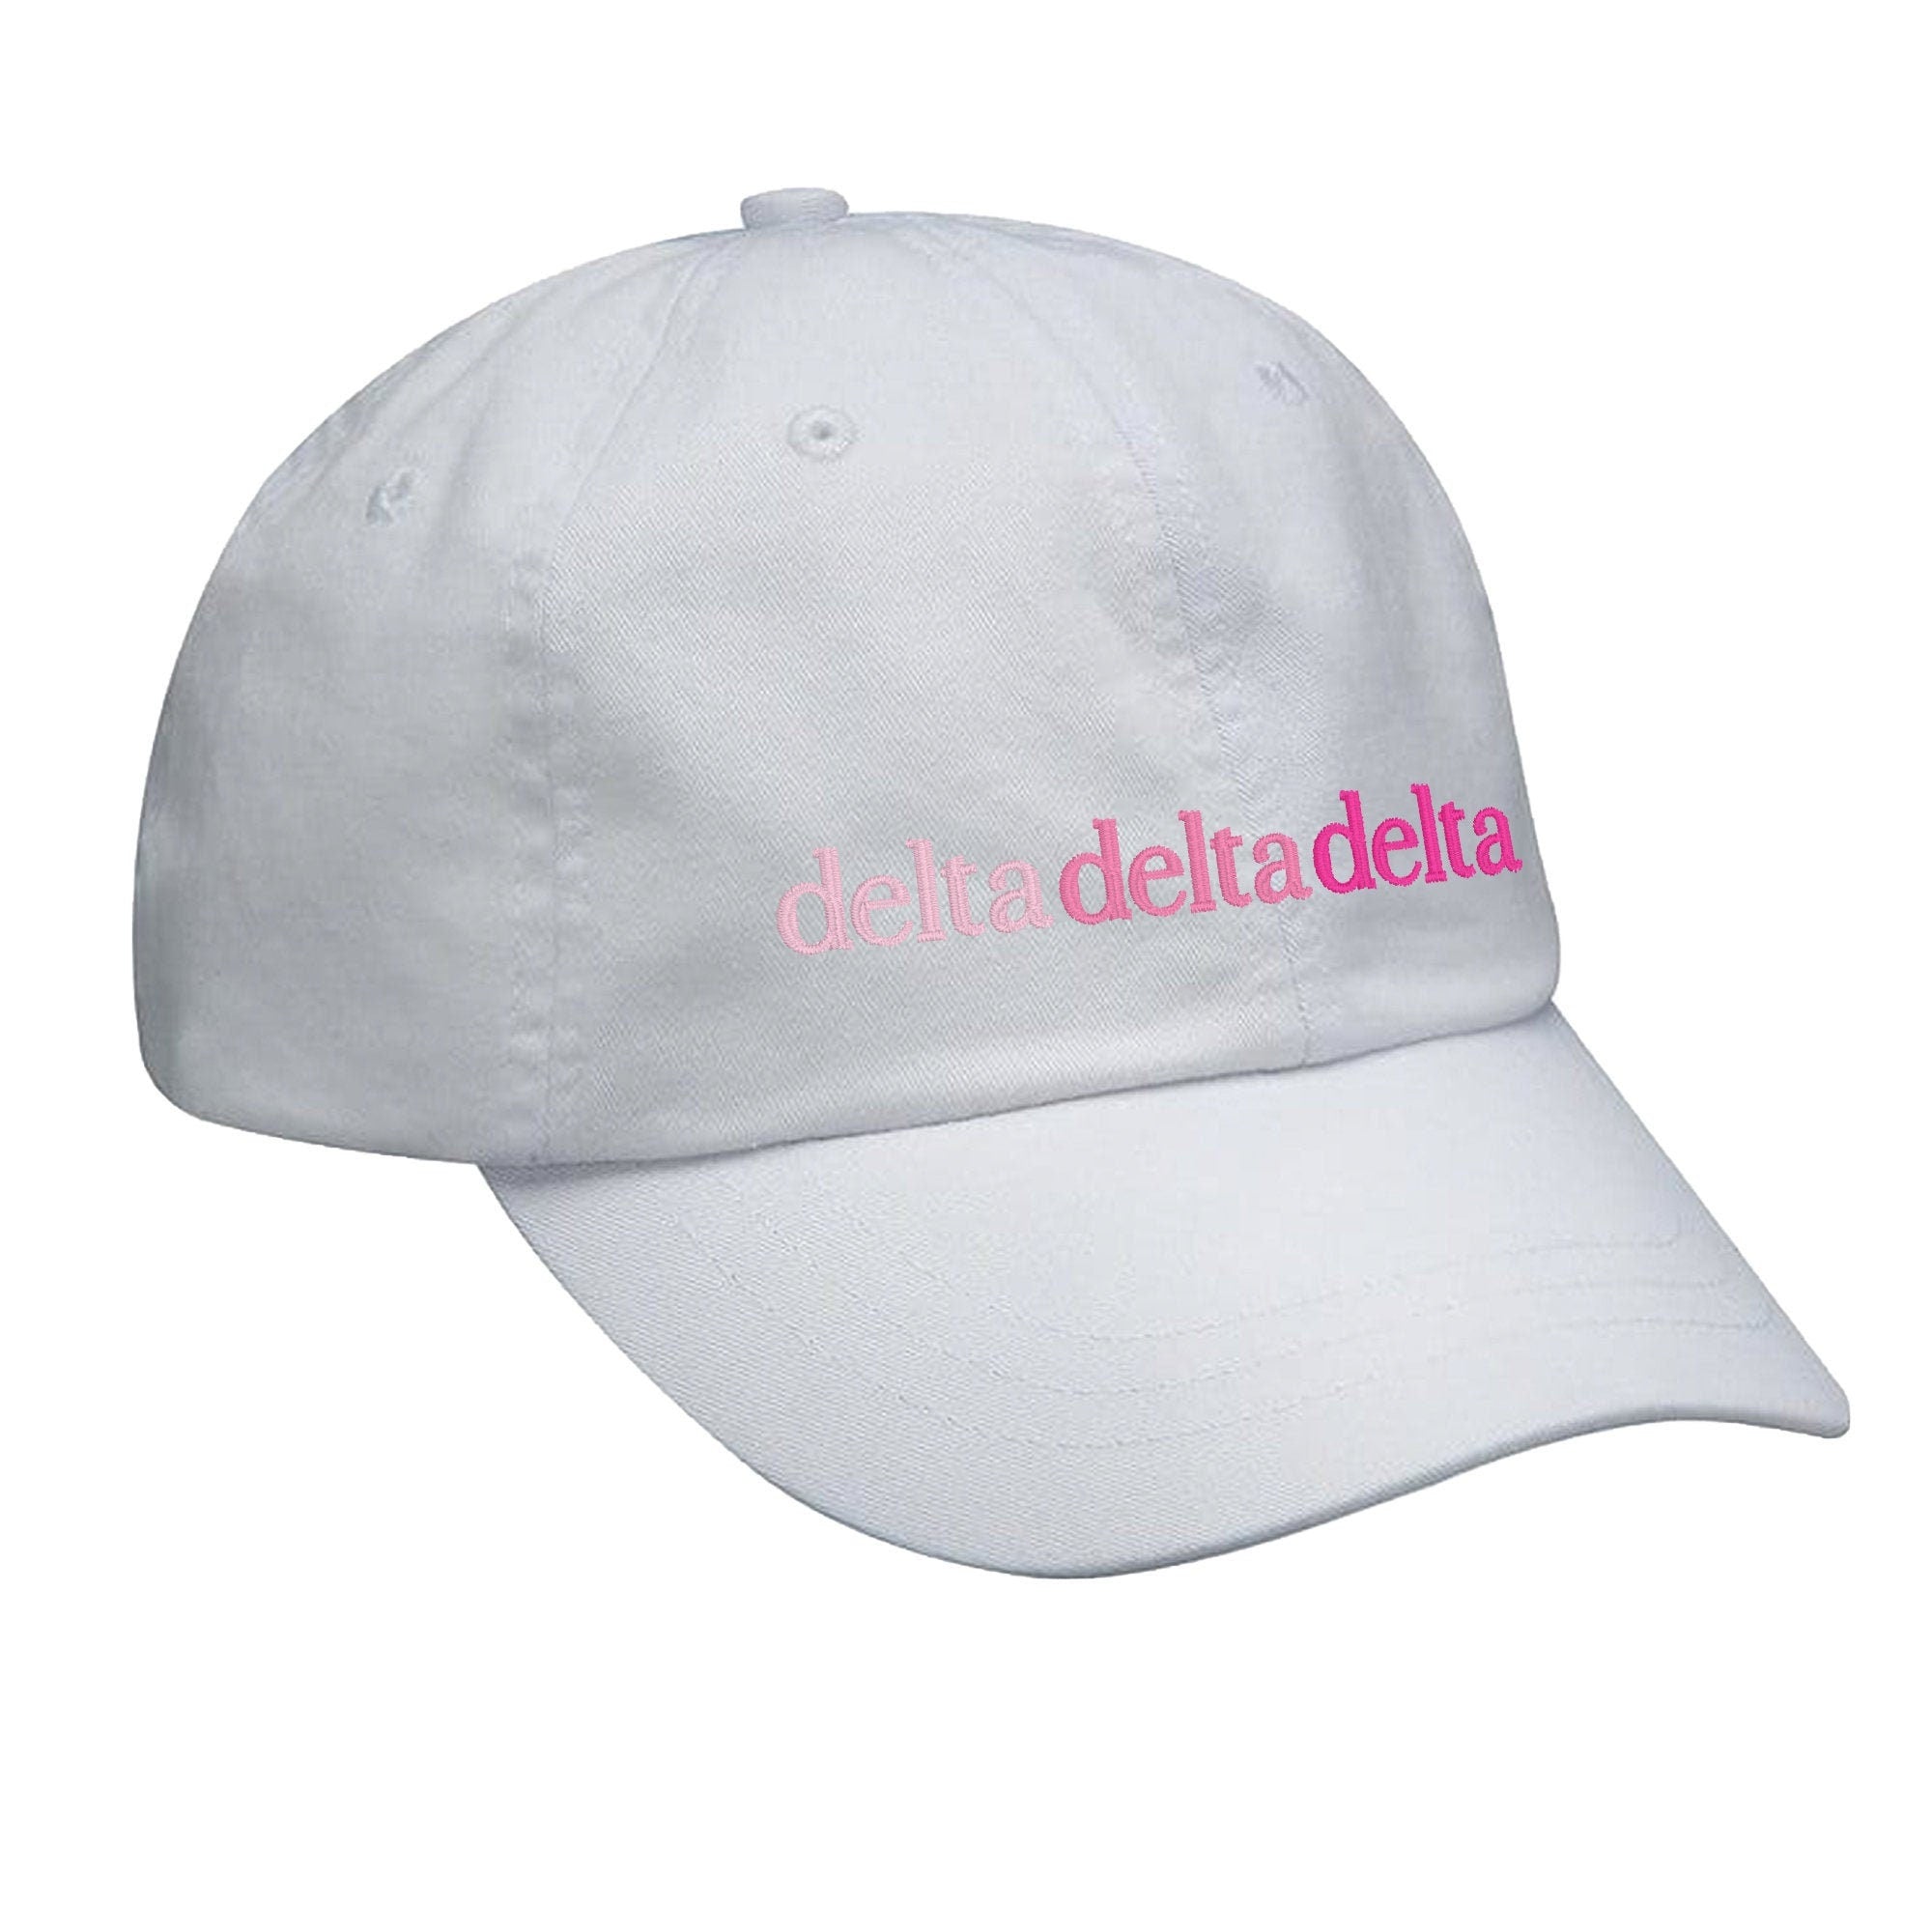 Delta Delta Delta Hat - Pink Gradient - Go Greek Chic